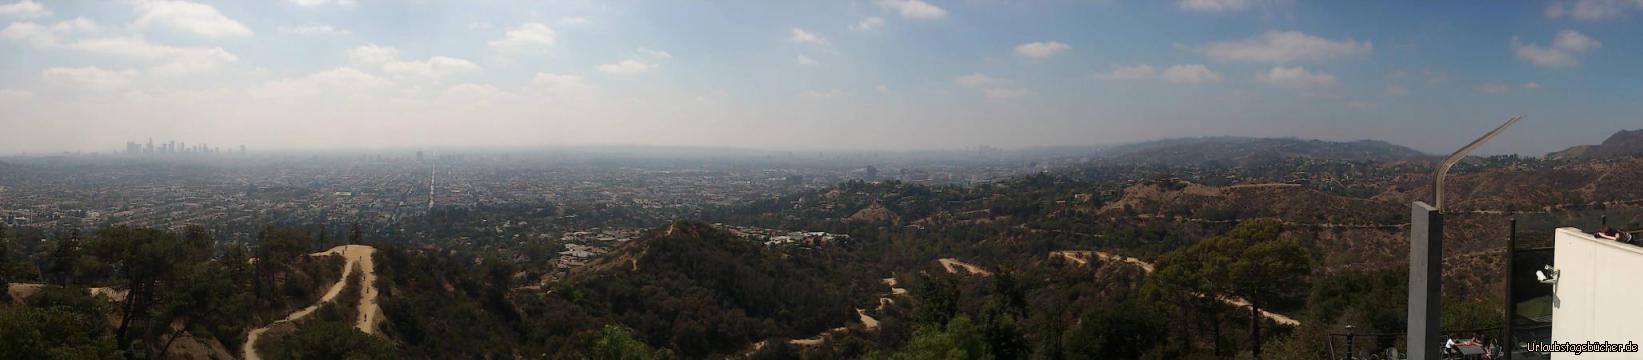 Los Angeles: der Blick vom Griffith Observatorium über die mit knapp 4 Millionen Menschen zweitgrößte Stadt der USA: Los Angeles (links die Skyline markiert Downtown, rechts sind die Hollywood Hills)